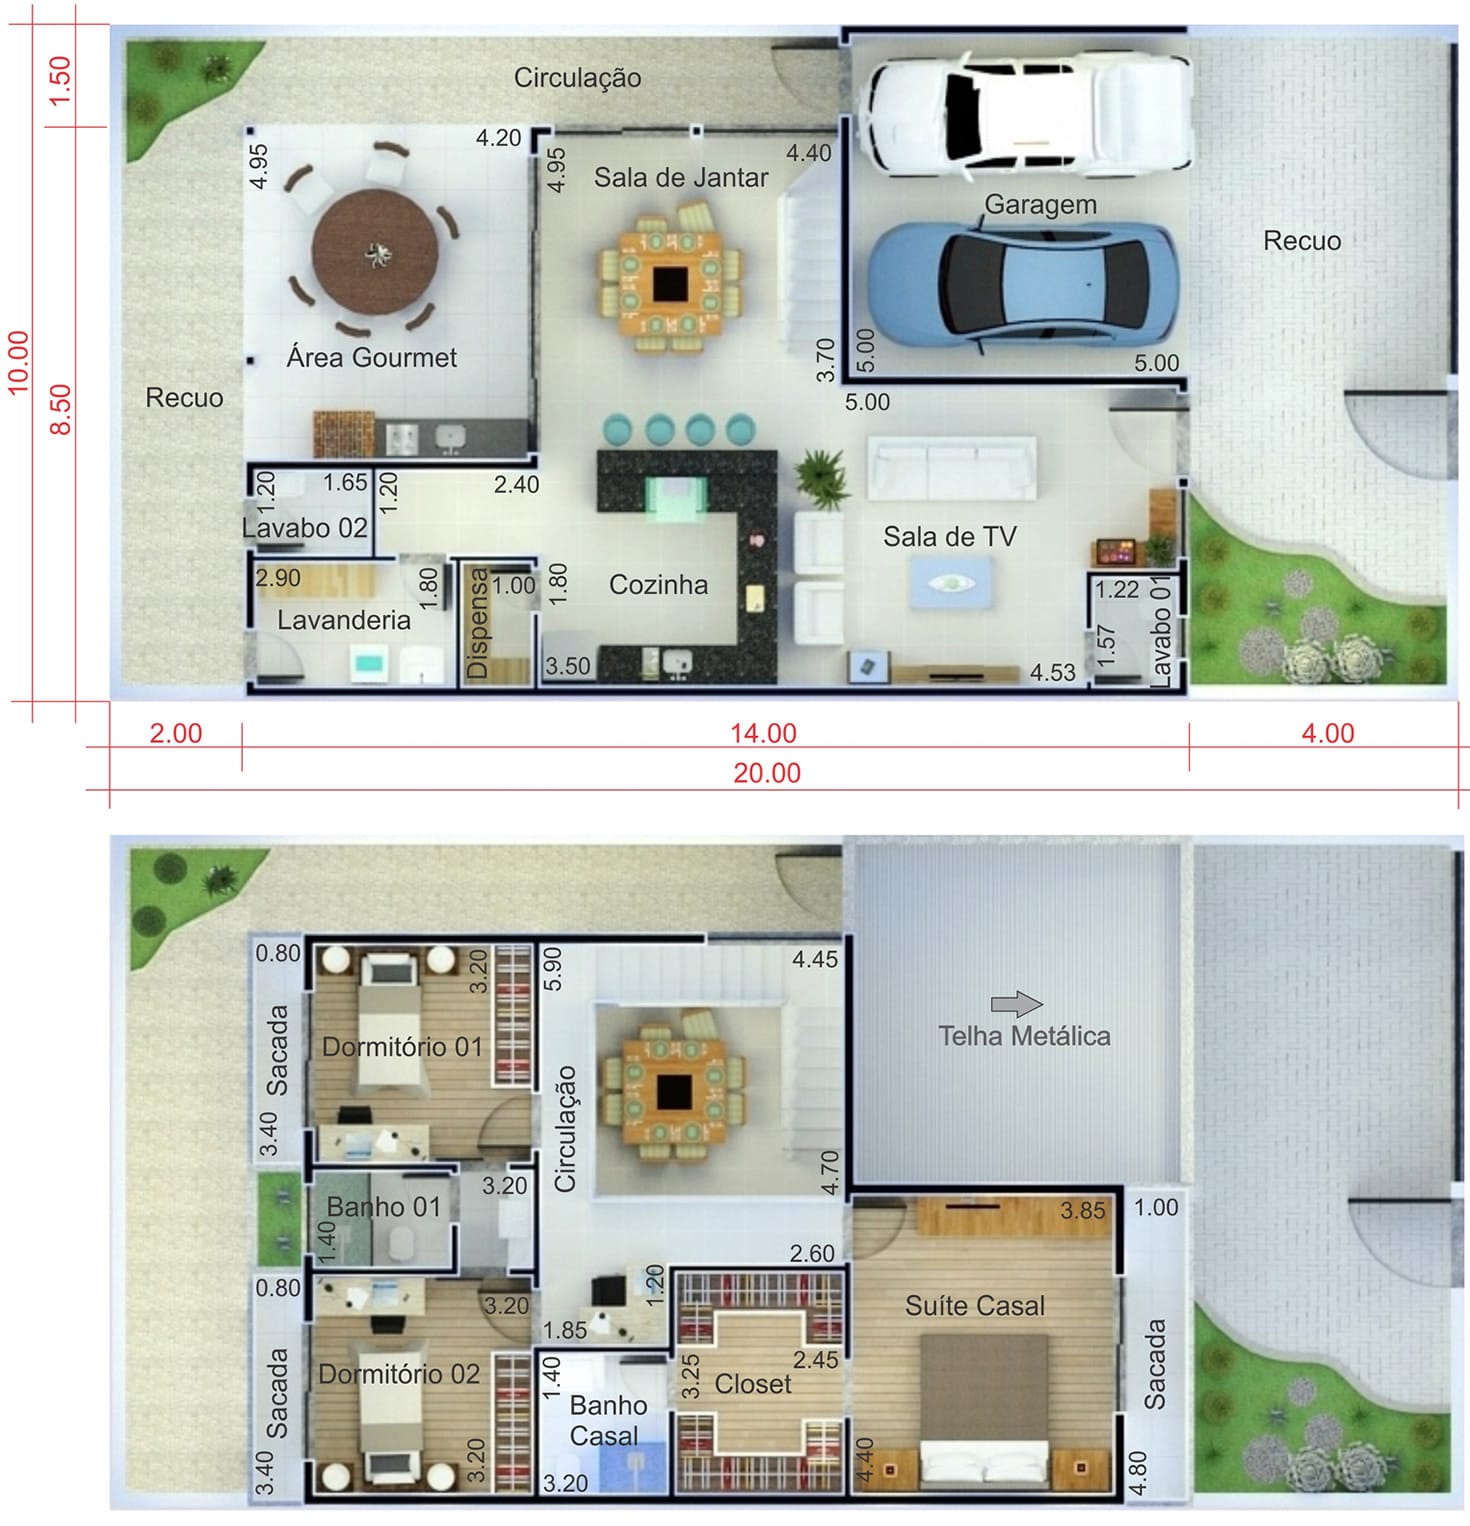 Floor plan with built-in roof10x20